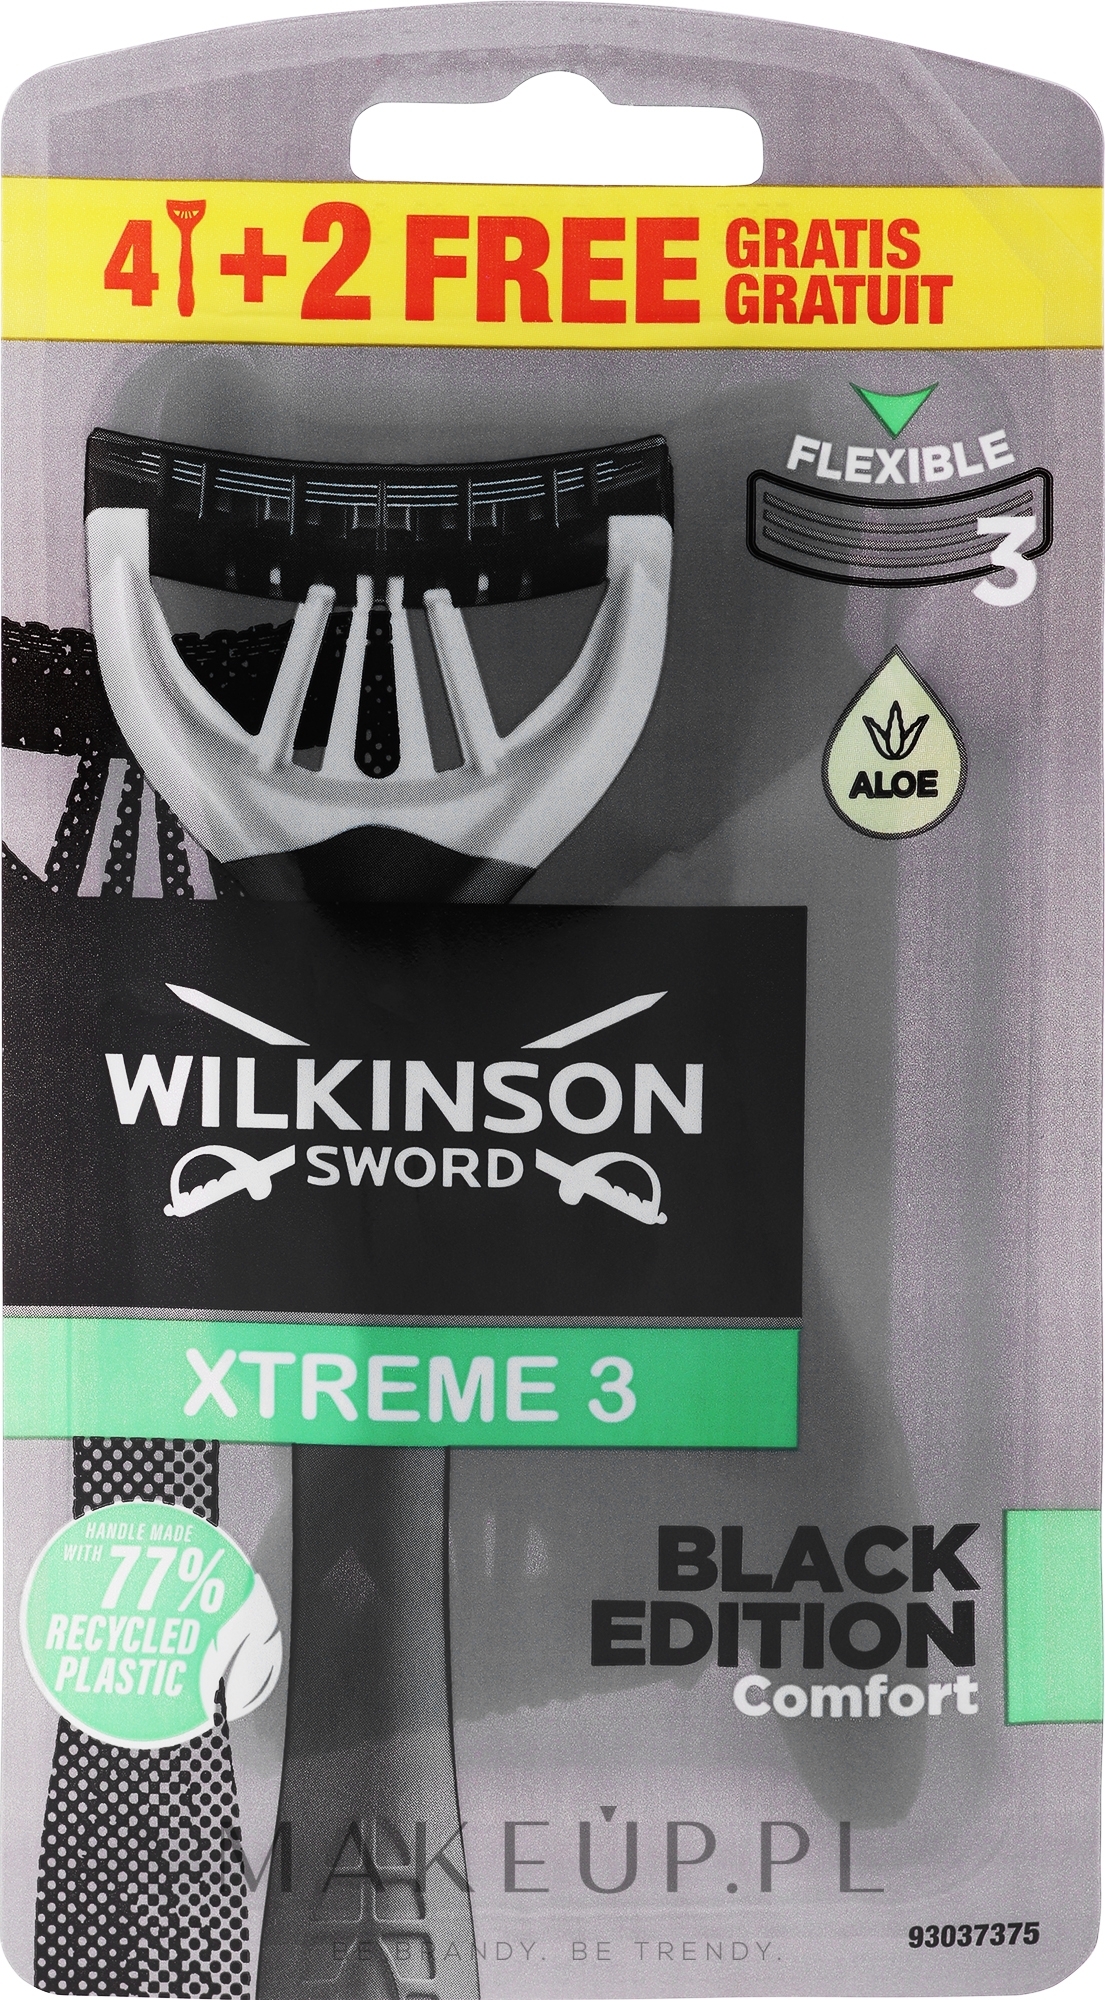 Zestaw jednorazowych maszynek do golenia, 4 +2 szt. - Wilkinson Sword Xtreme 3 Black Edition — Zdjęcie 6 szt.